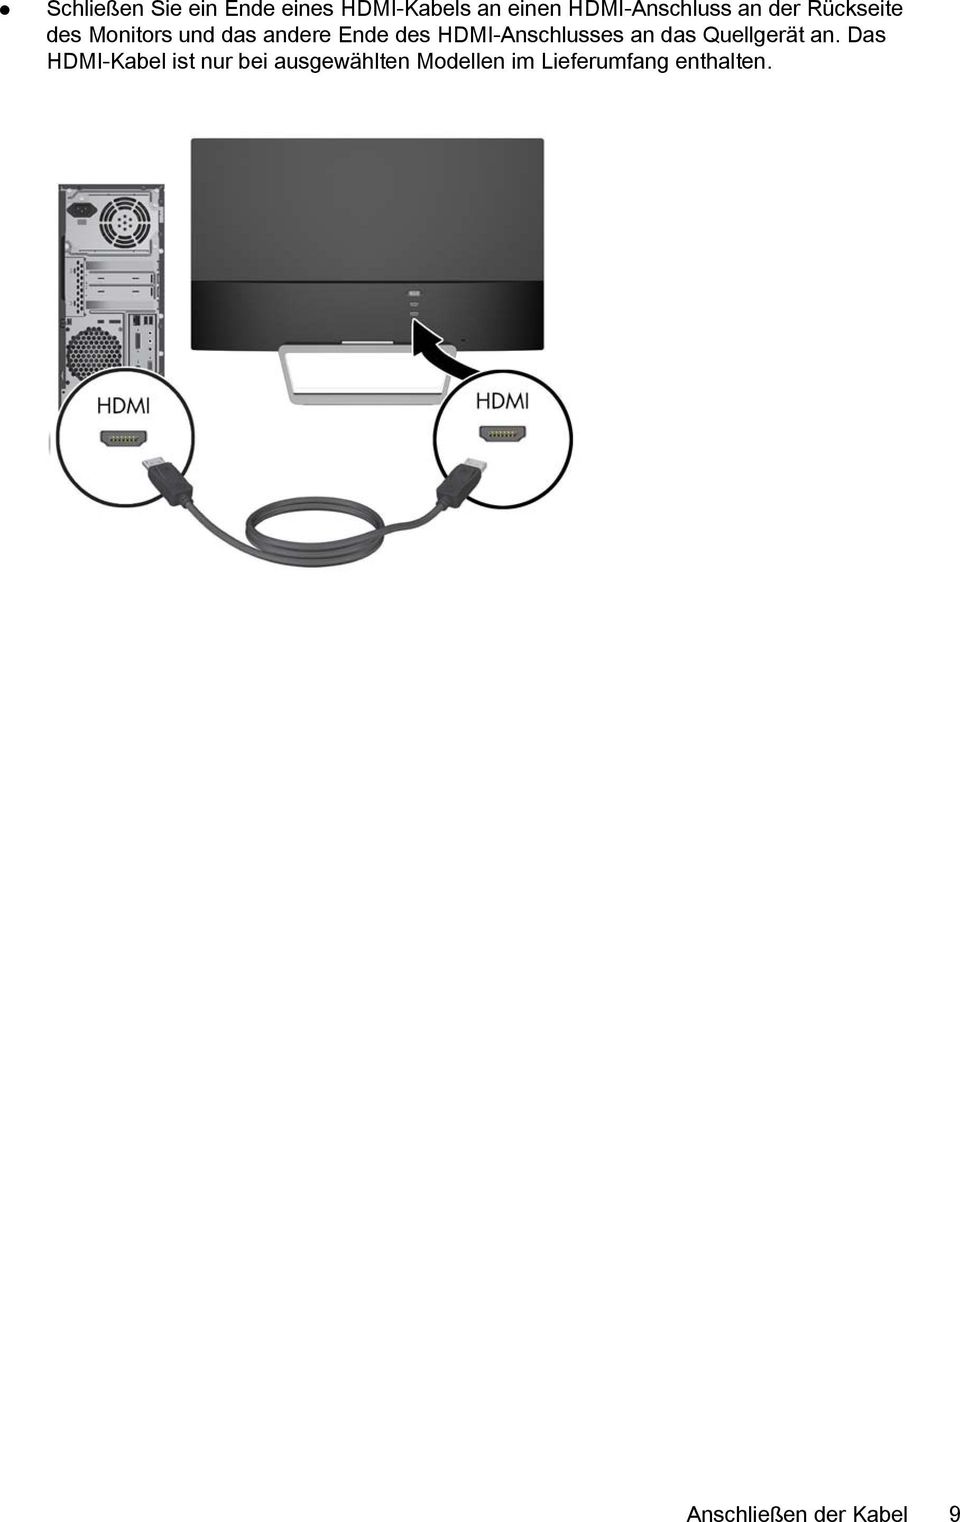 HDMI-Anschlusses an das Quellgerät an.